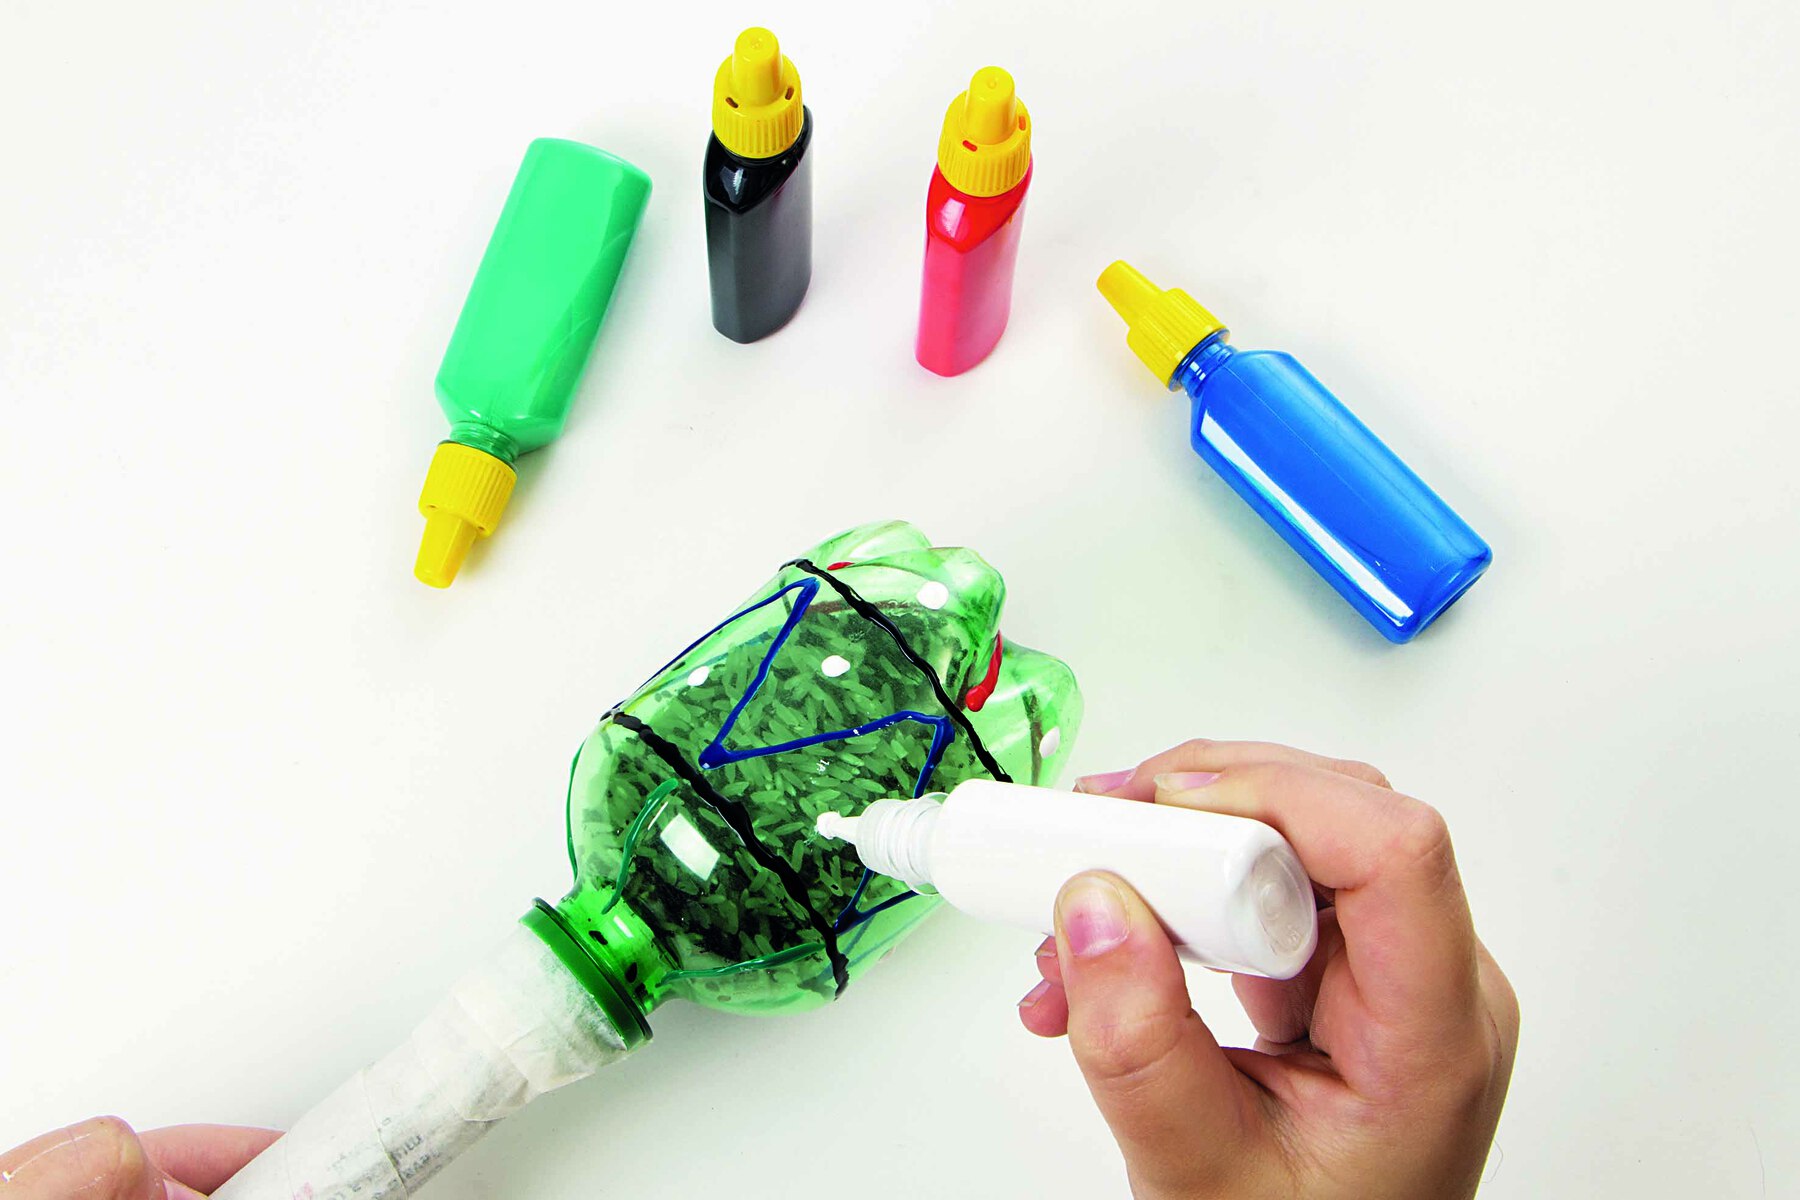 Fotografia. Destaque de mãos aplicando tinta colorida em uma garrafa PET, formando desenhos geométricos. Acima, tubos de tinta colorida.